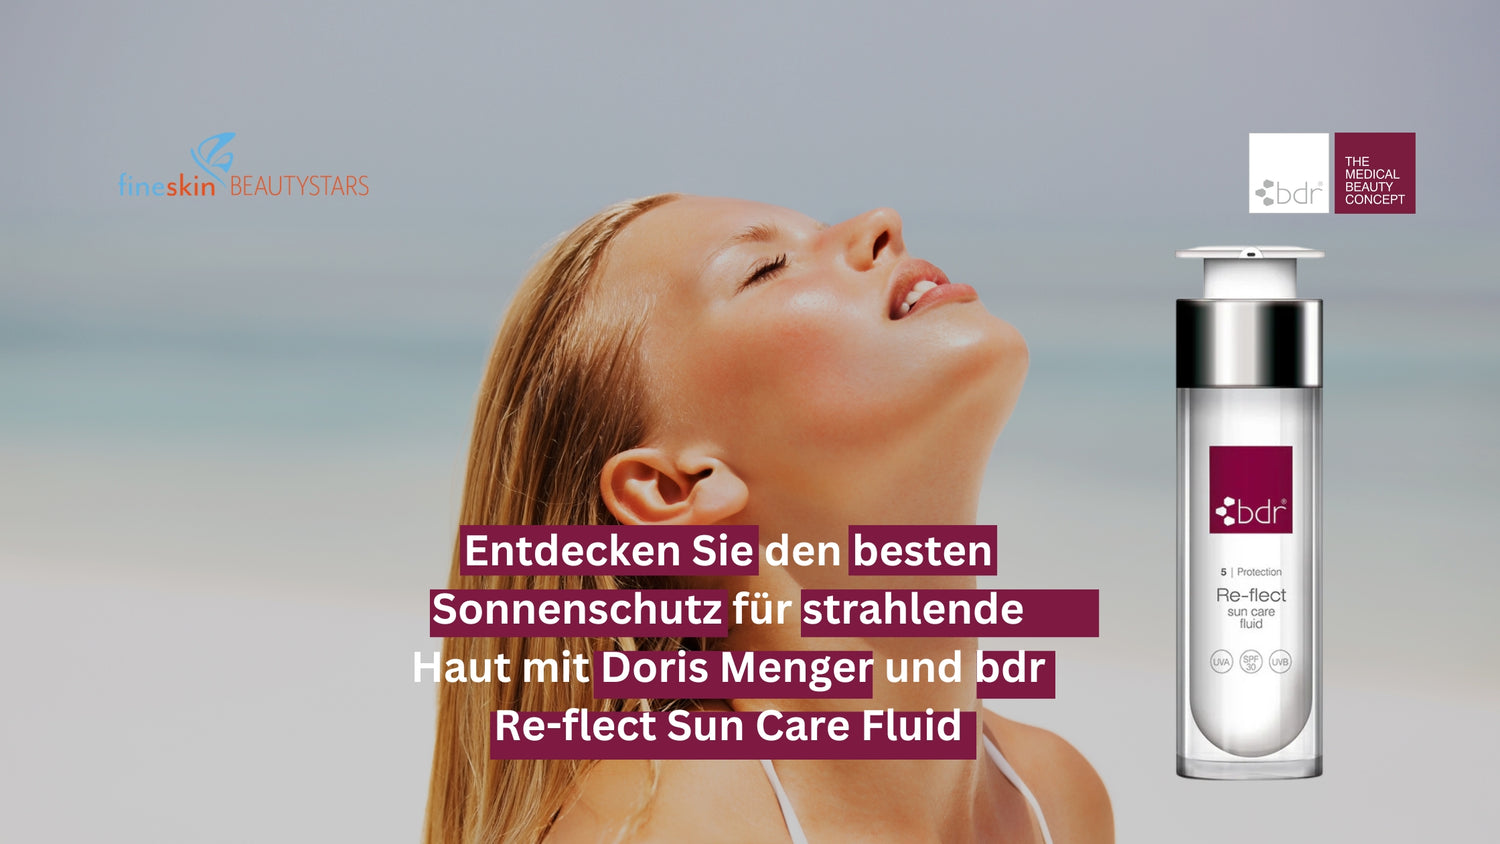 Entdecken Sie den besten Sonnenschutz für strahlende Haut mit Doris Menger und bdr Re-flect Sun Care Fluid